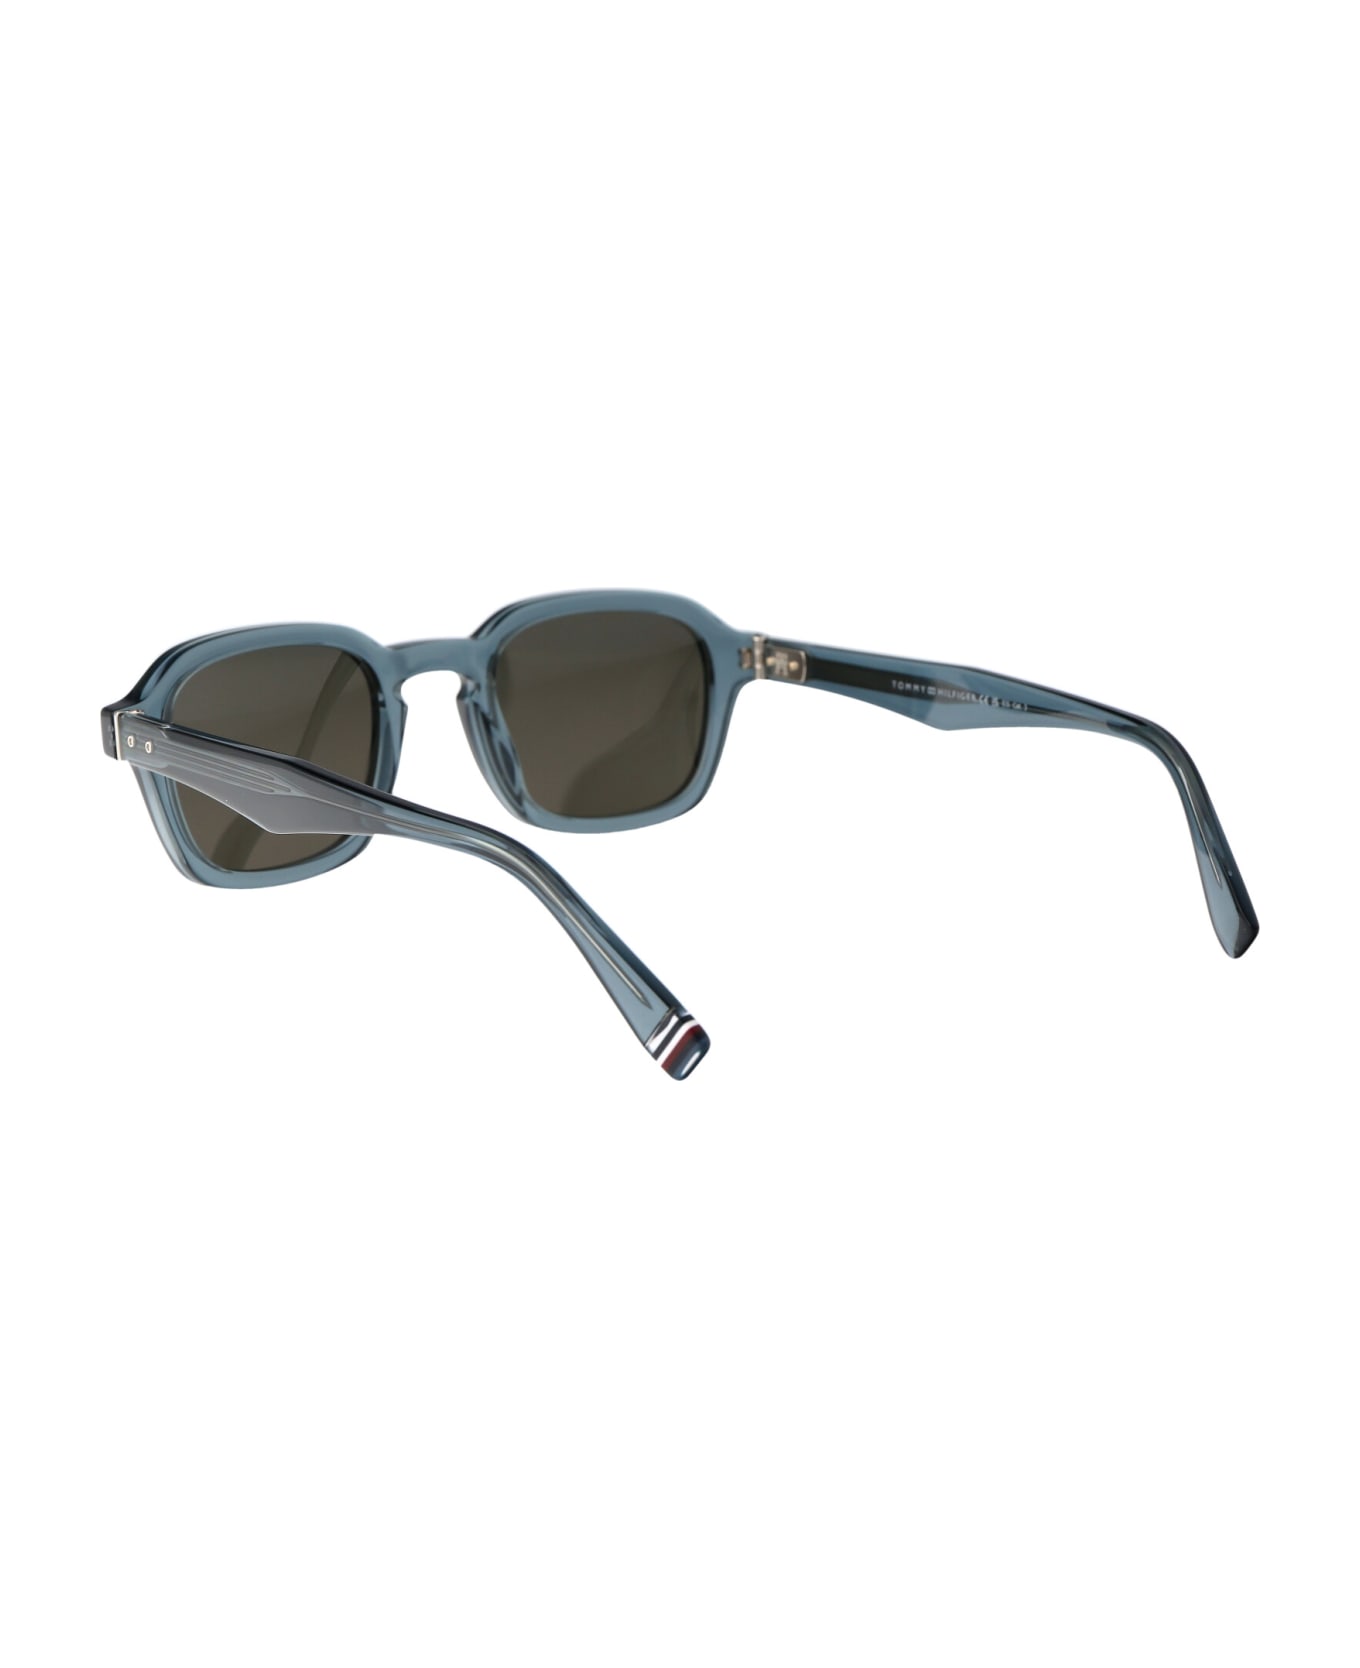 Tommy Hilfiger Th 2032/s Sunglasses - PJPIR BLUE